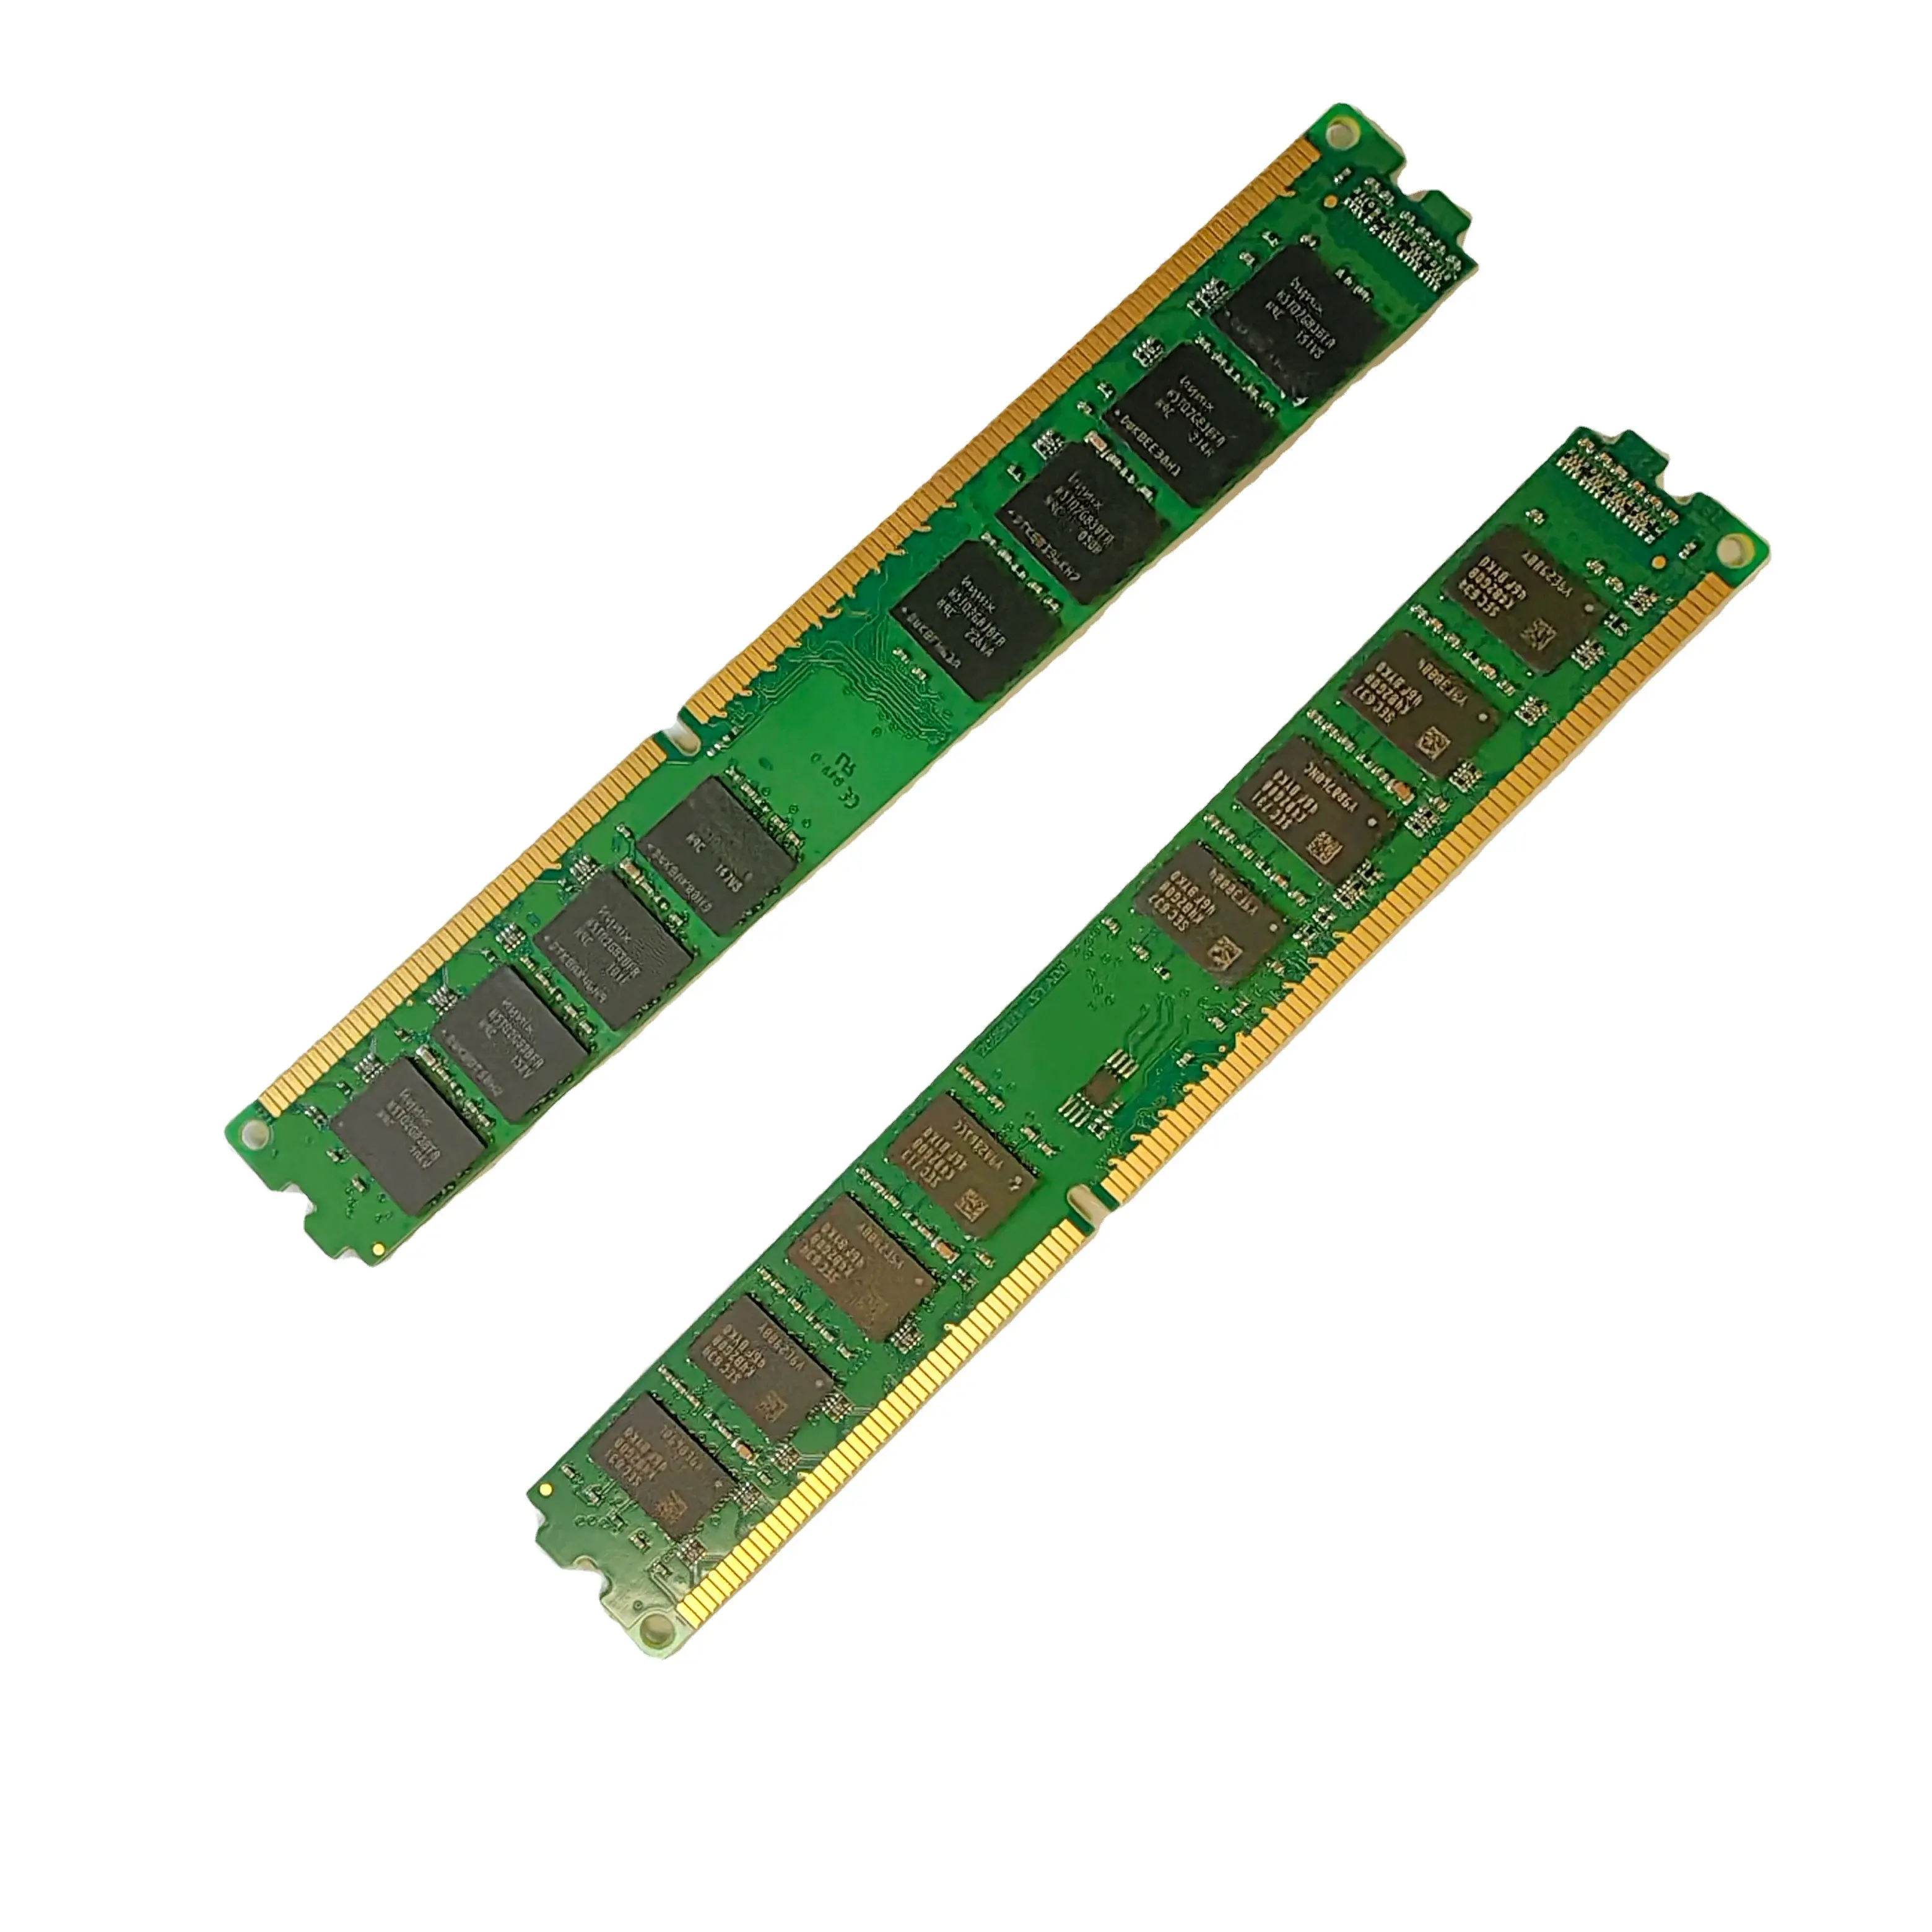 Venta al por mayor buen precio DDR3 nuevo hecho 8GB RAM 1333/1600 MHZ 1,5 V Memoria Escritorio de doble rango